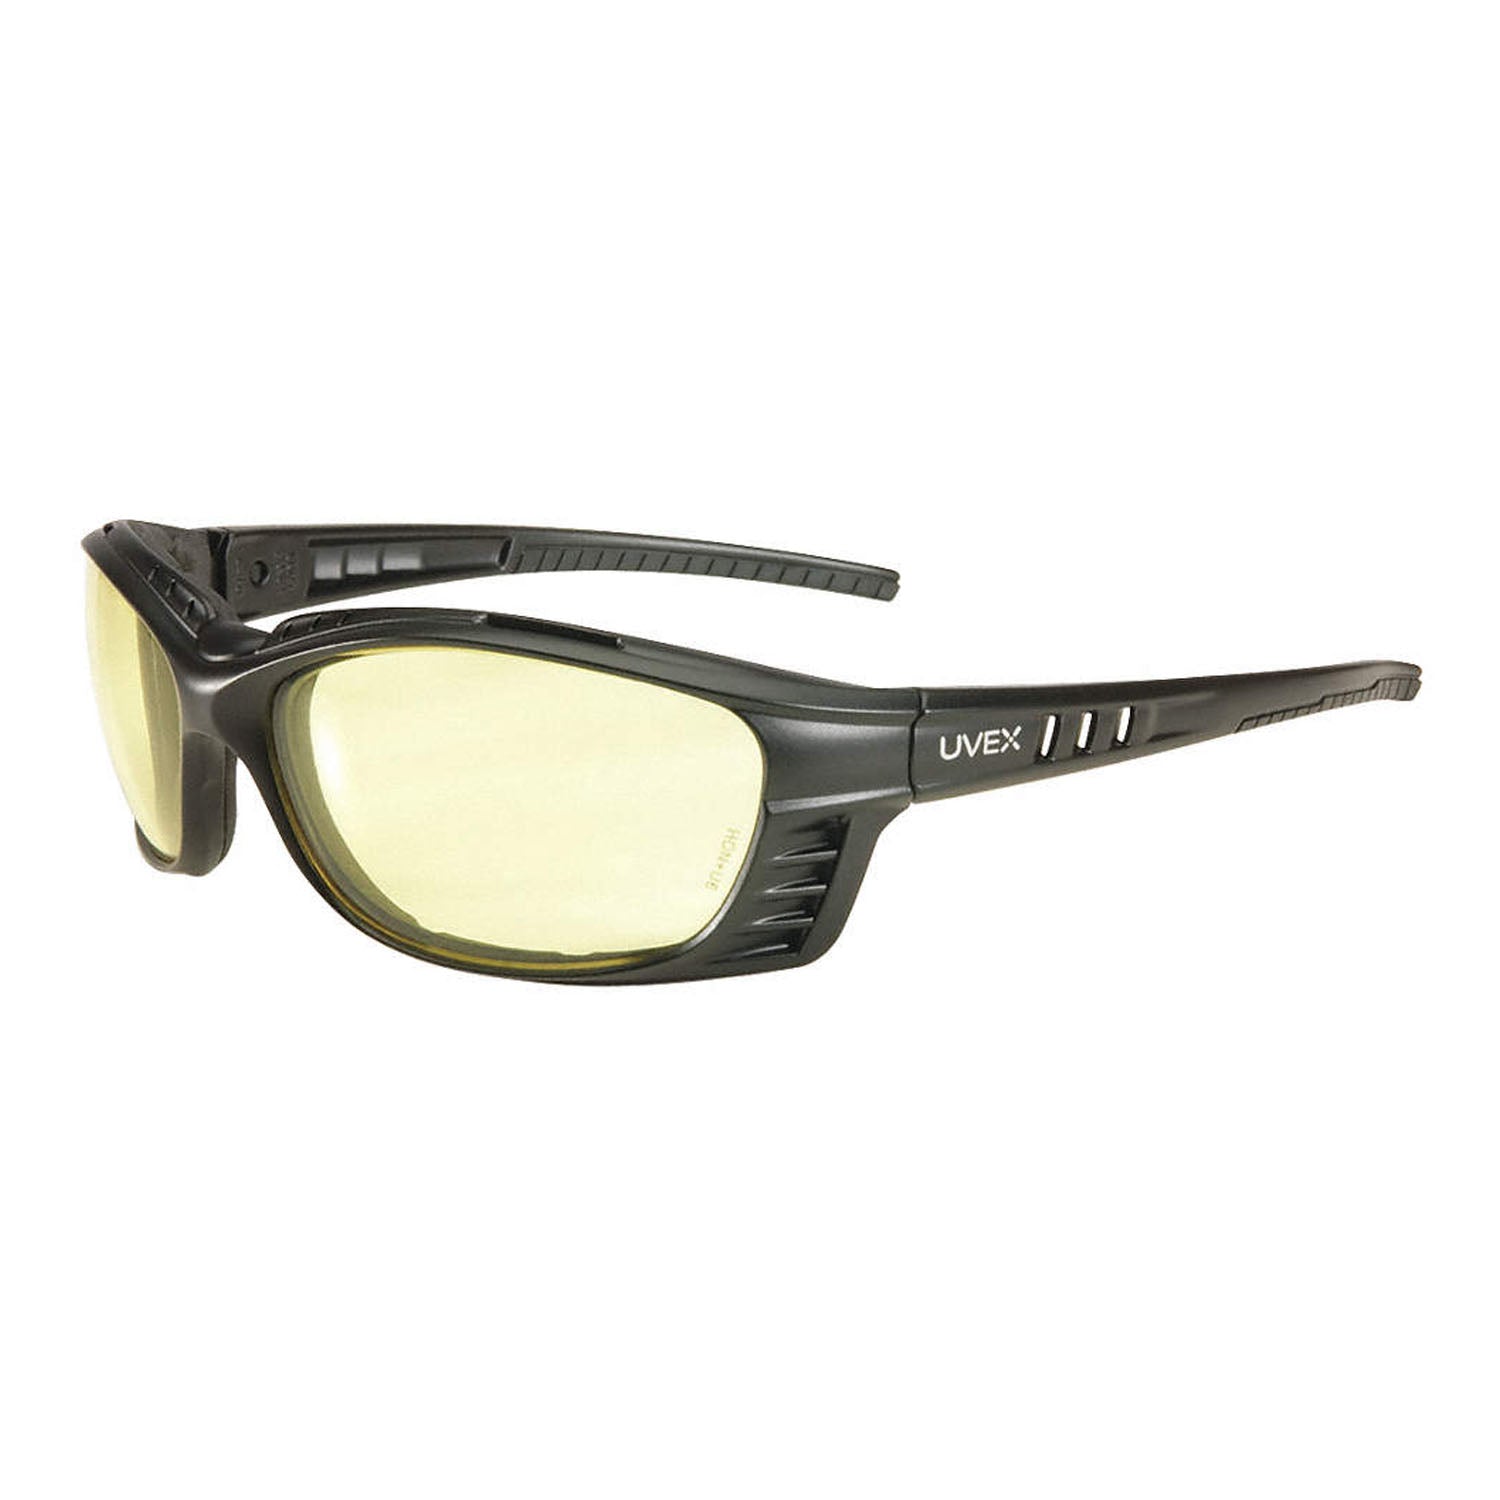 UVEX Livewire Safety Sealed Eyewear with Matte Black Frame, Espresso Lens